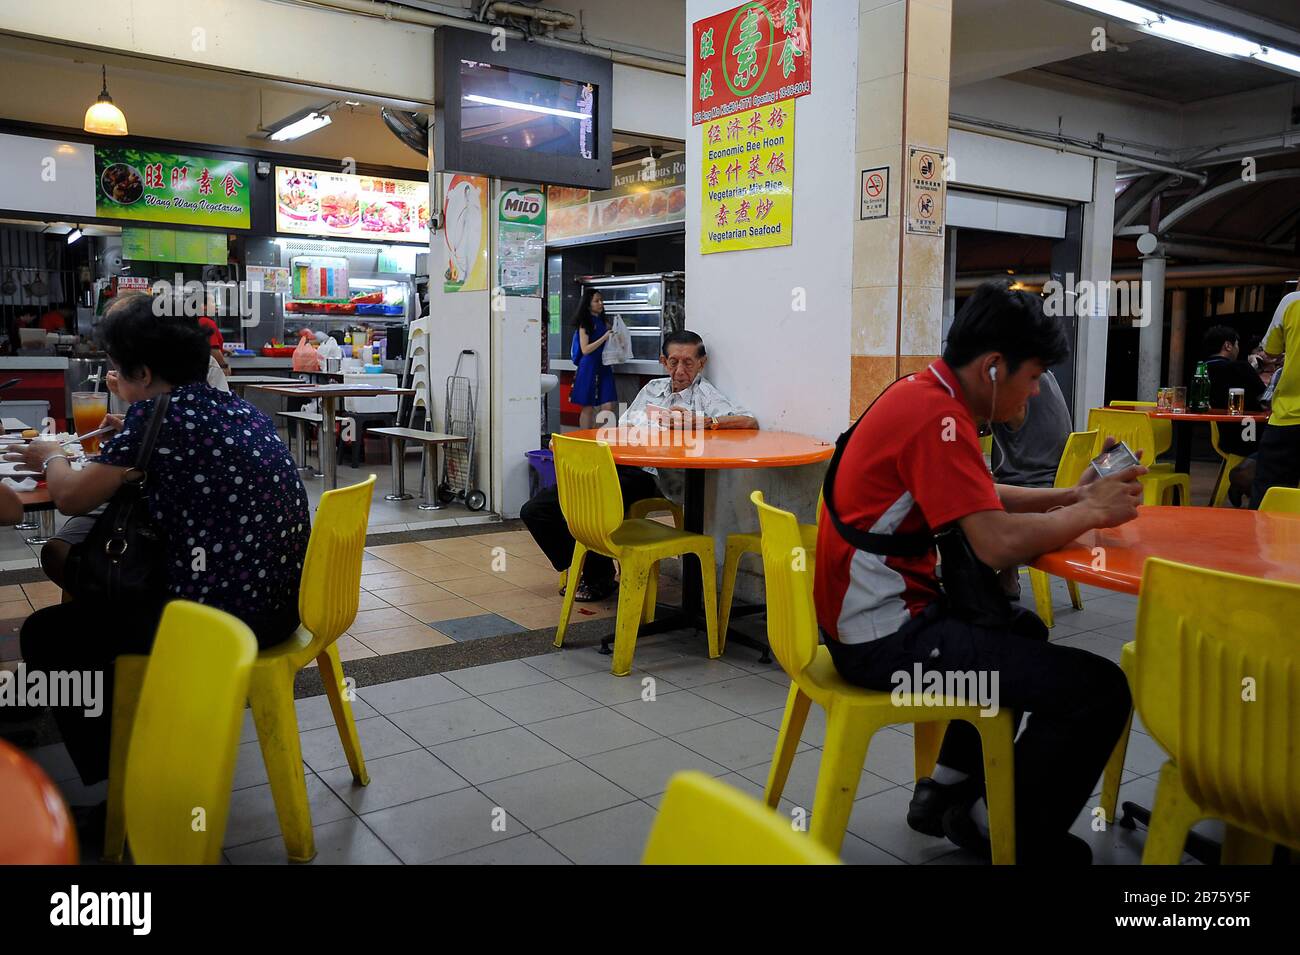 29.12.2014, Singapour, République de Singapour, Asie - les gens dînent dans un tribunal alimentaire à Ang Mo Kio de Singapour. [traduction automatique] Banque D'Images